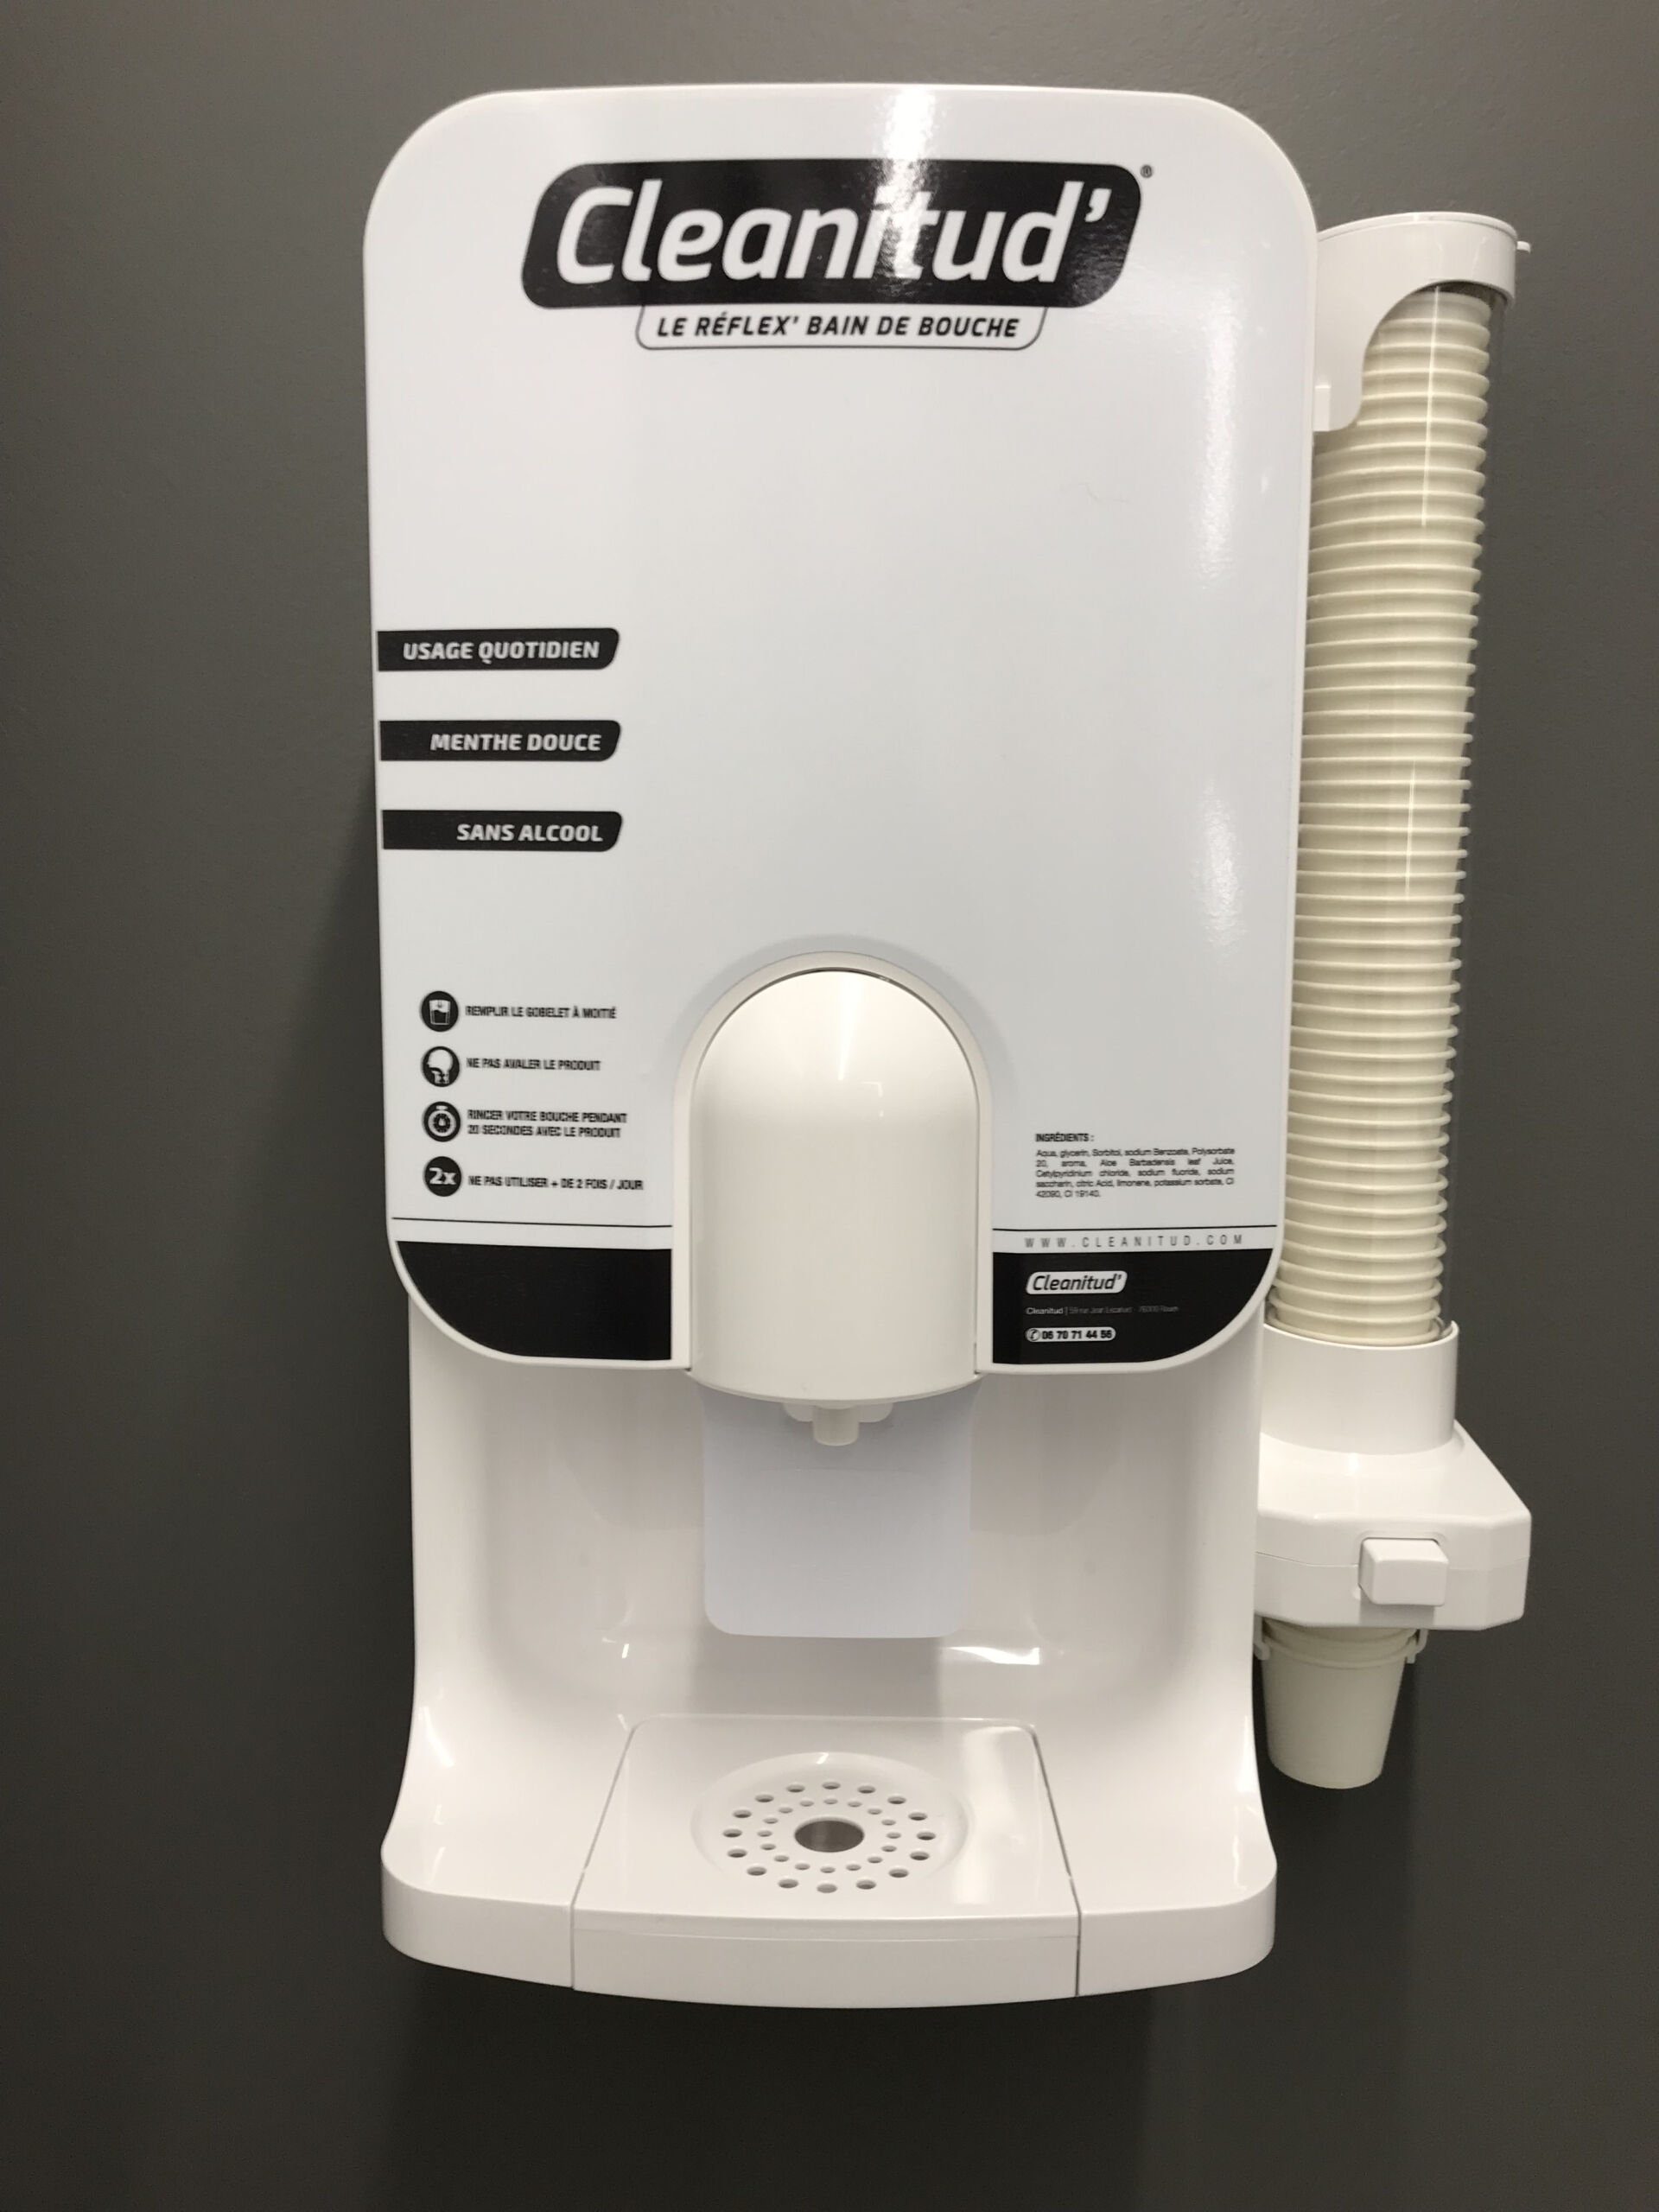 Cleanitude : un distributeur de bain de bouche dans les toilettes